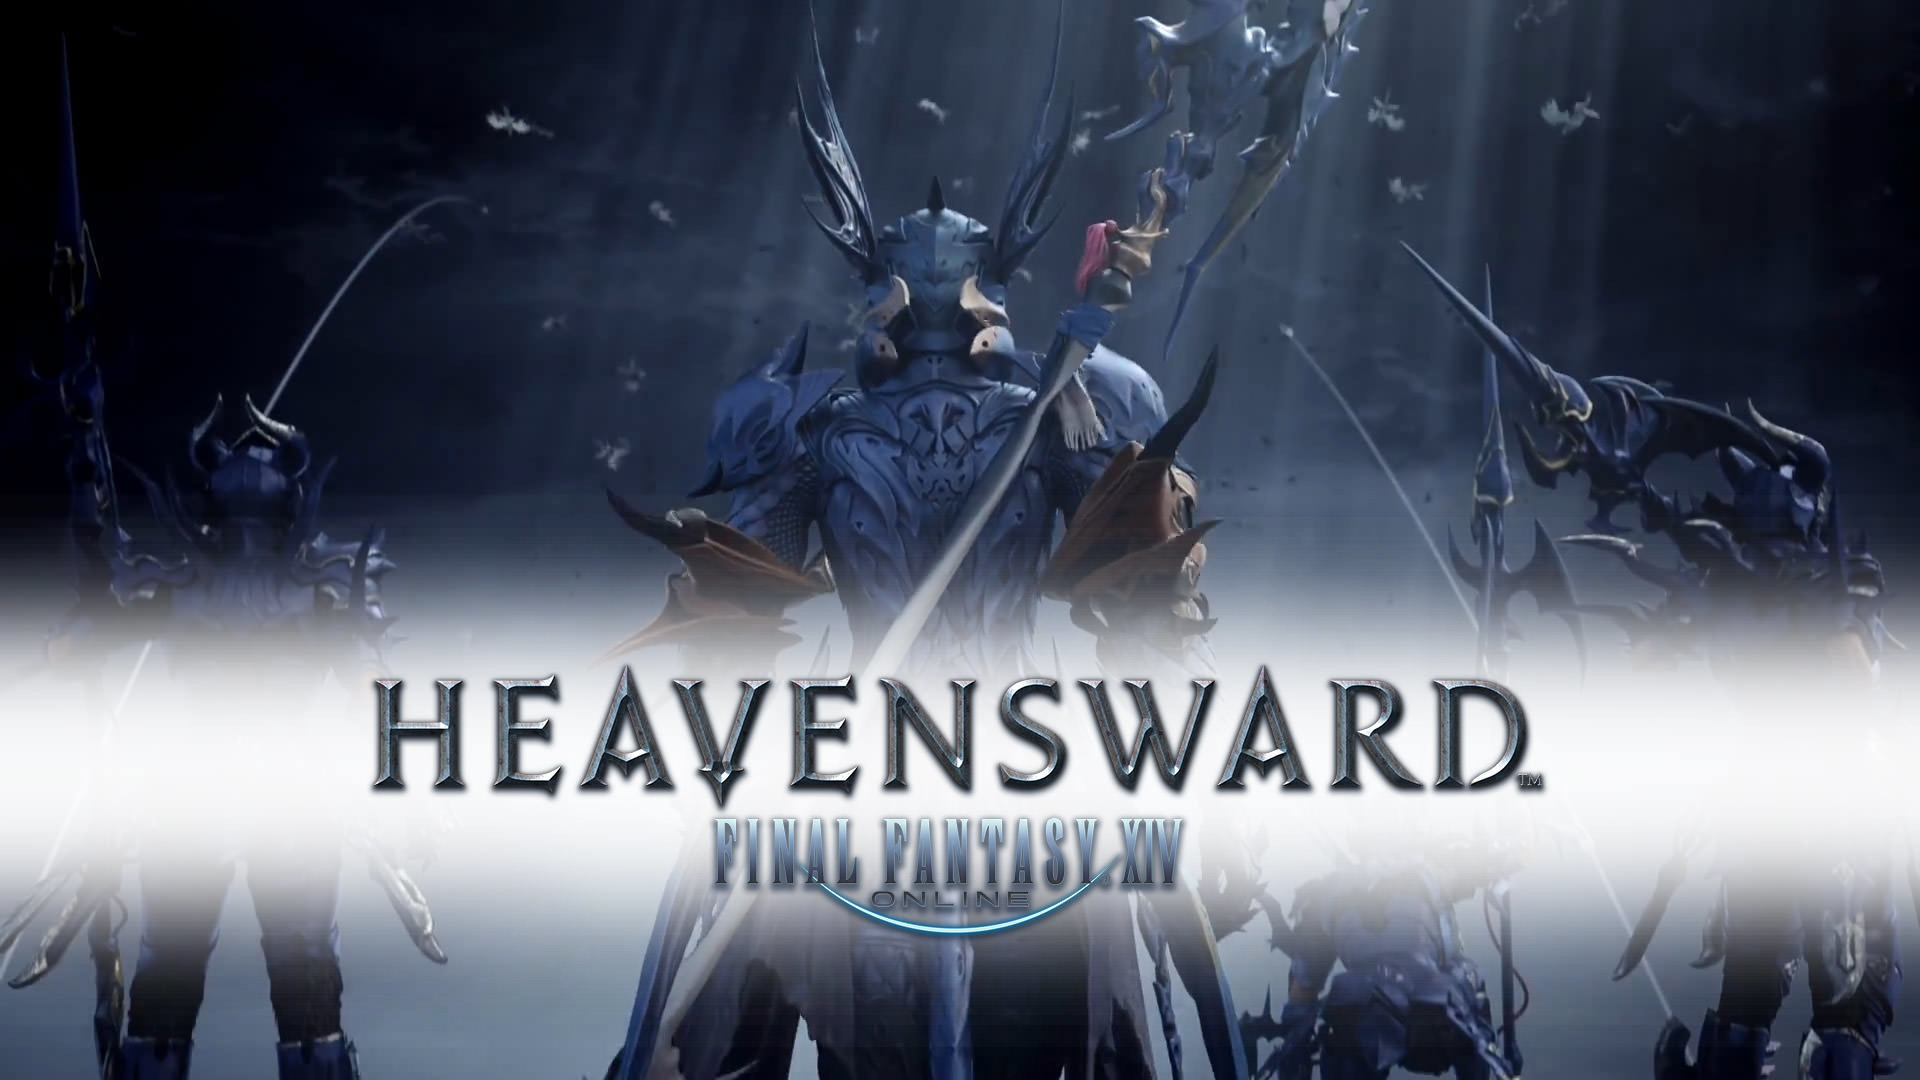 FINAL FANTASY XIV: Heavensward